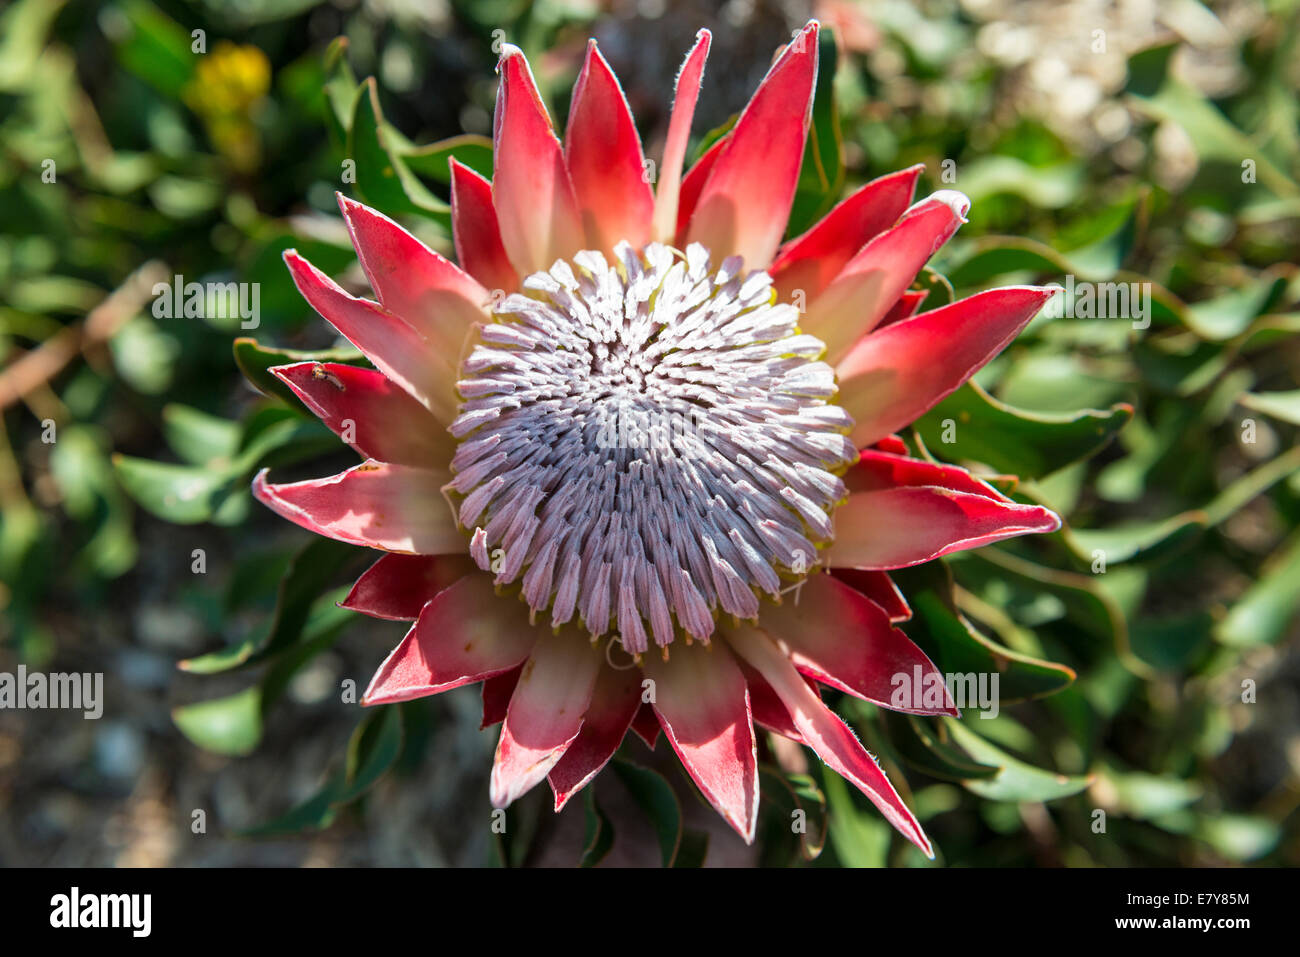 Inflorescence of a King Protea (Protea cynaroides) Kirstenbosch Botanical garden, Cape Town, South Africa Stock Photo